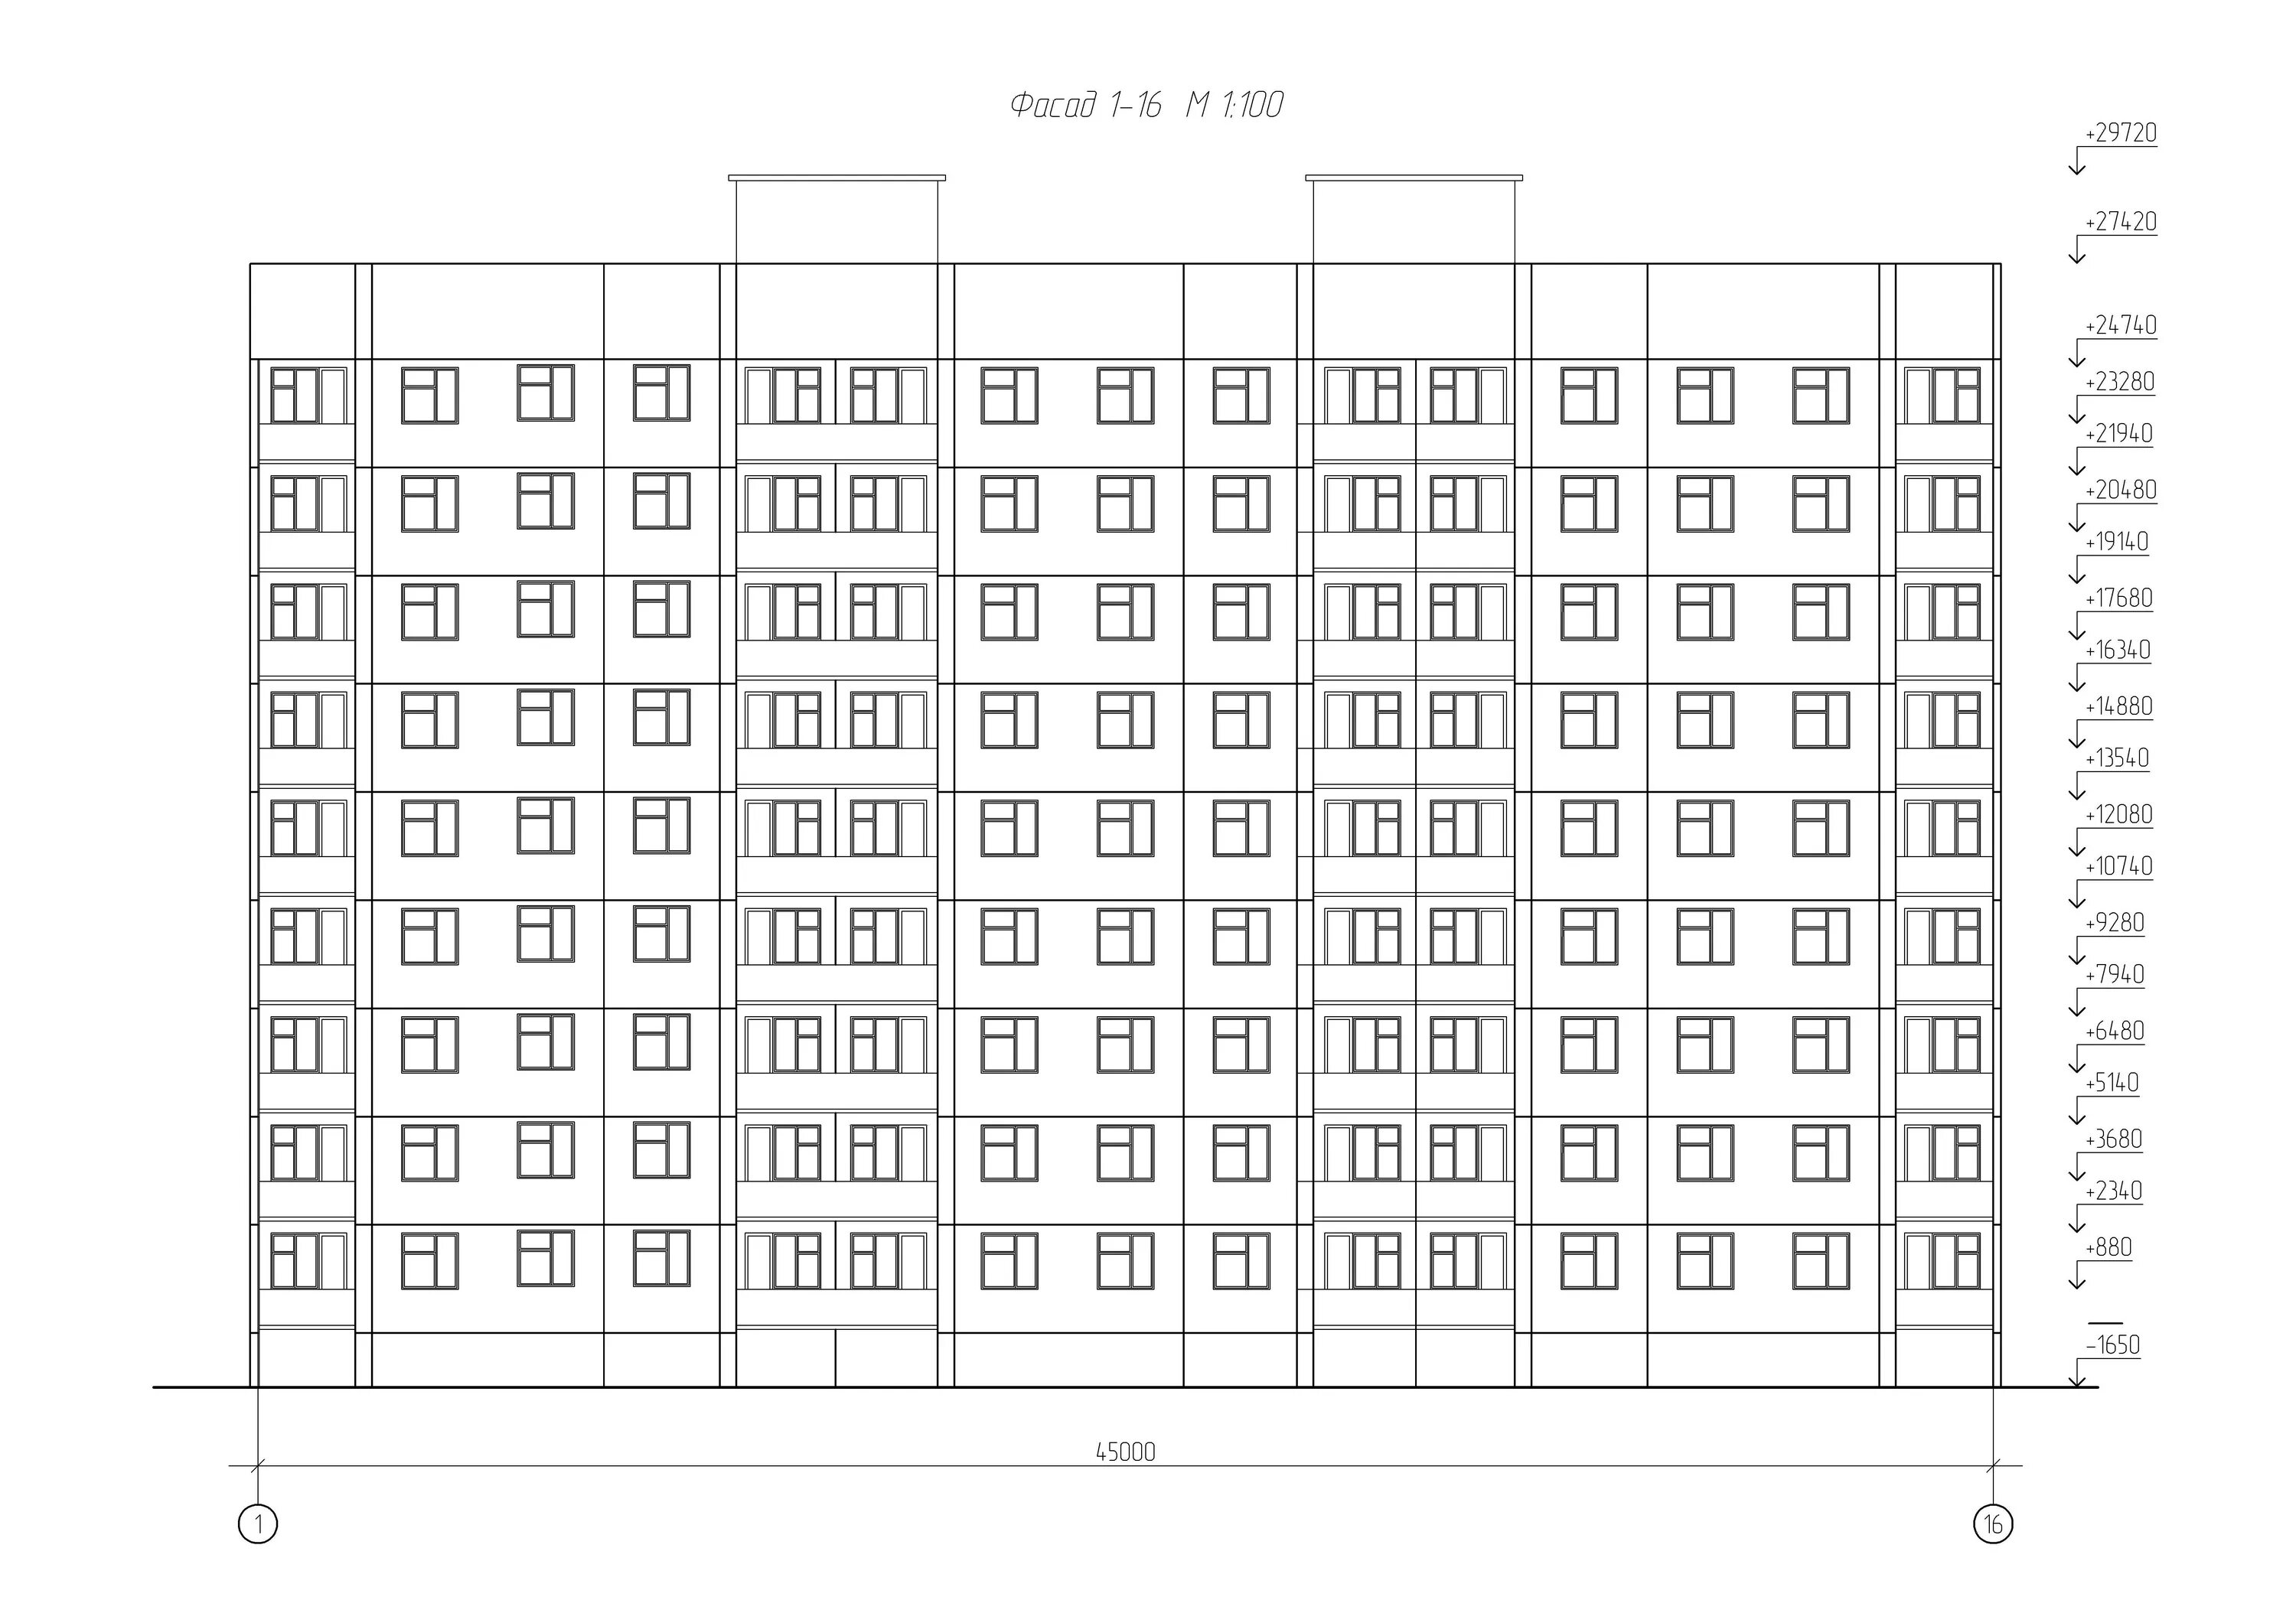 Пример панельного дома. Фасад многоэтажного дома чертеж. Дом п44 фасад чертеж. Фасад 1-5 чертеж. Схема 9 этажного панельного дома.